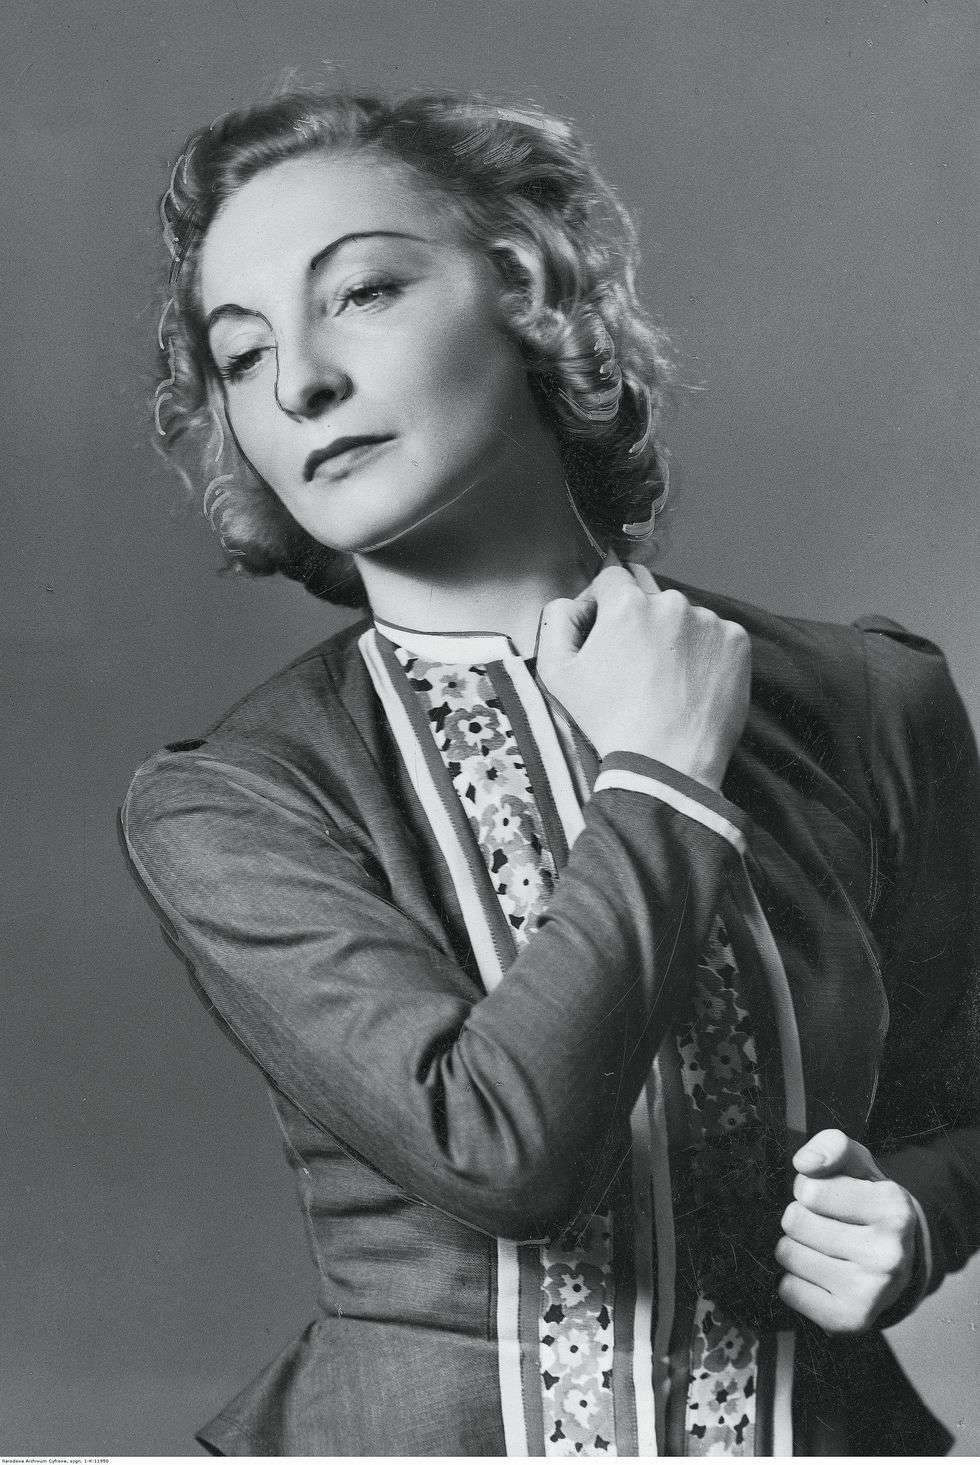  <p>Janina/Yanka Rudzka (zdjęcie z przełomu 1938 i 1939 roku)</p>
<p>&nbsp;</p>